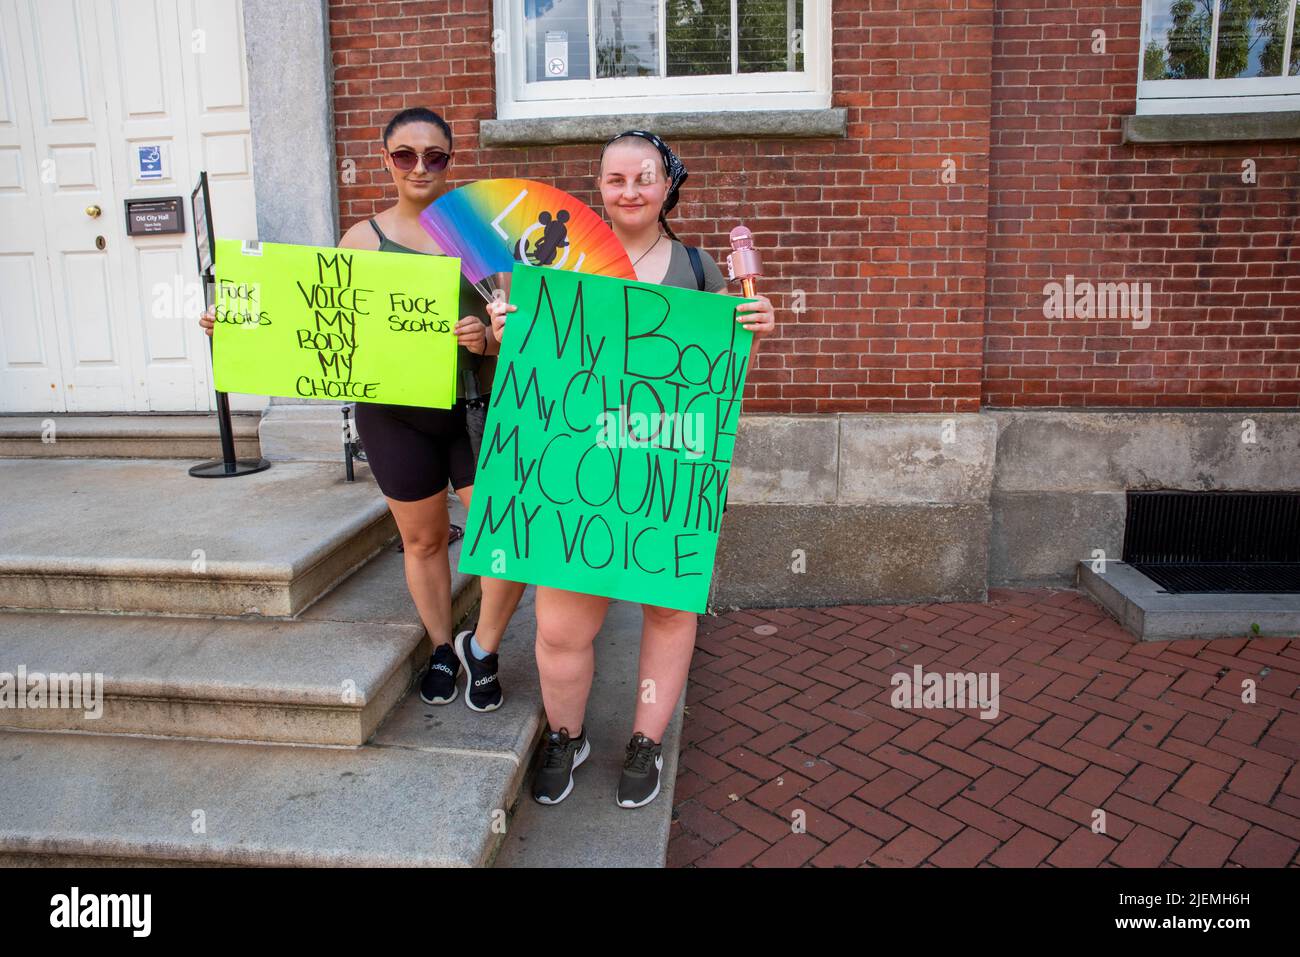 Deux jeunes femmes manifestent des signes féministes arc-en-ciel lors d'un rassemblement pro-choix Banque D'Images